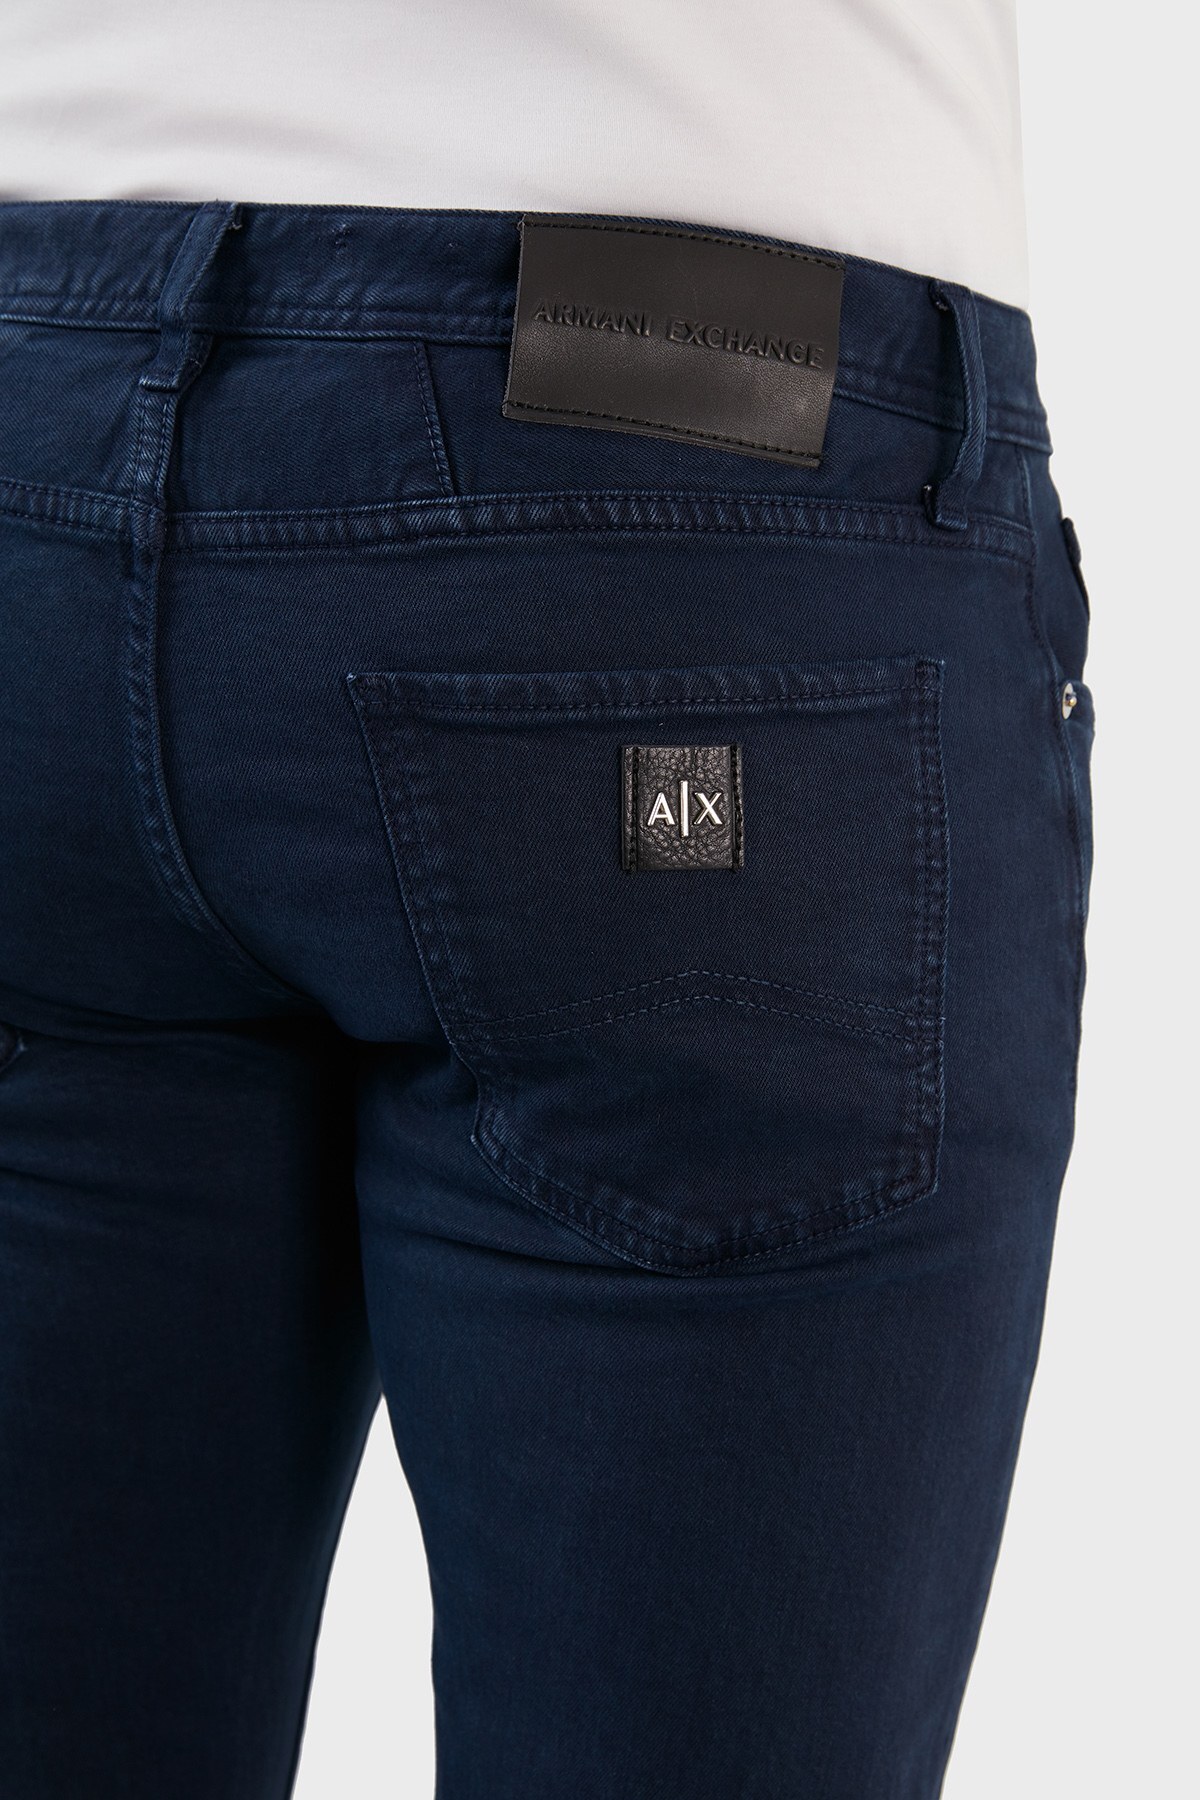 Armani Exchange Pamuklu Normal Bel Slim Fit Dar Paça Jeans Erkek Kot Pantolon 3LZJ13 Z1D7Z 1510 LACİVERT